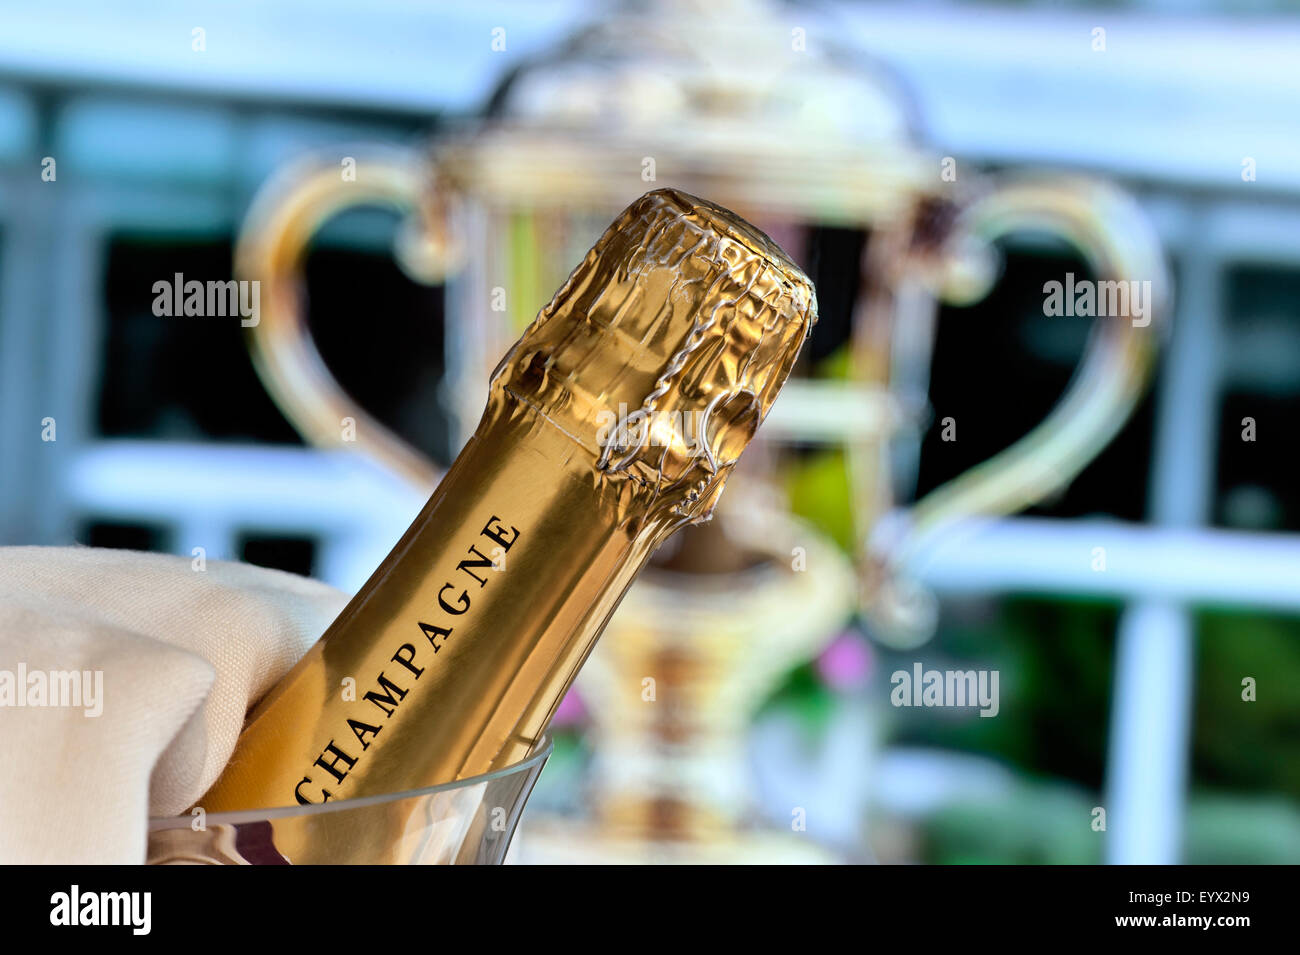 VINCITORE DELLA GOLD CUP ASCOT Chiudi la vista su una bottiglia di champagne nel refrigeratore del vino con la Royal Ascot Ladies Day Gold Cup sullo sfondo Ascot Berkshire UK Foto Stock